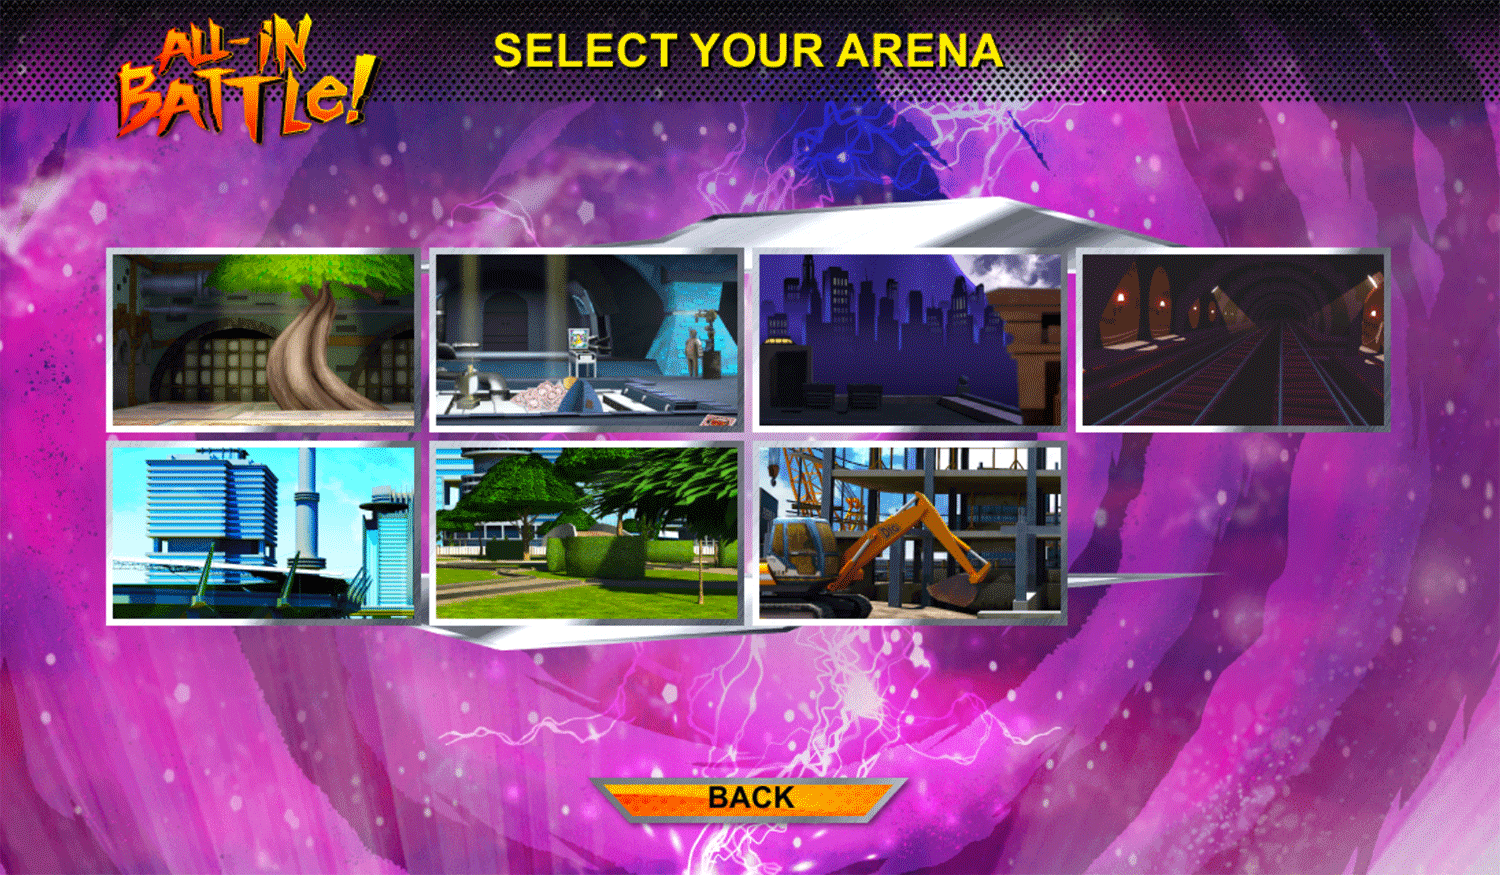 Power Rangers vs Teenage Mutant Ninja Turtles Ultimate Hero Clash 2 Arena Select Screenshot.